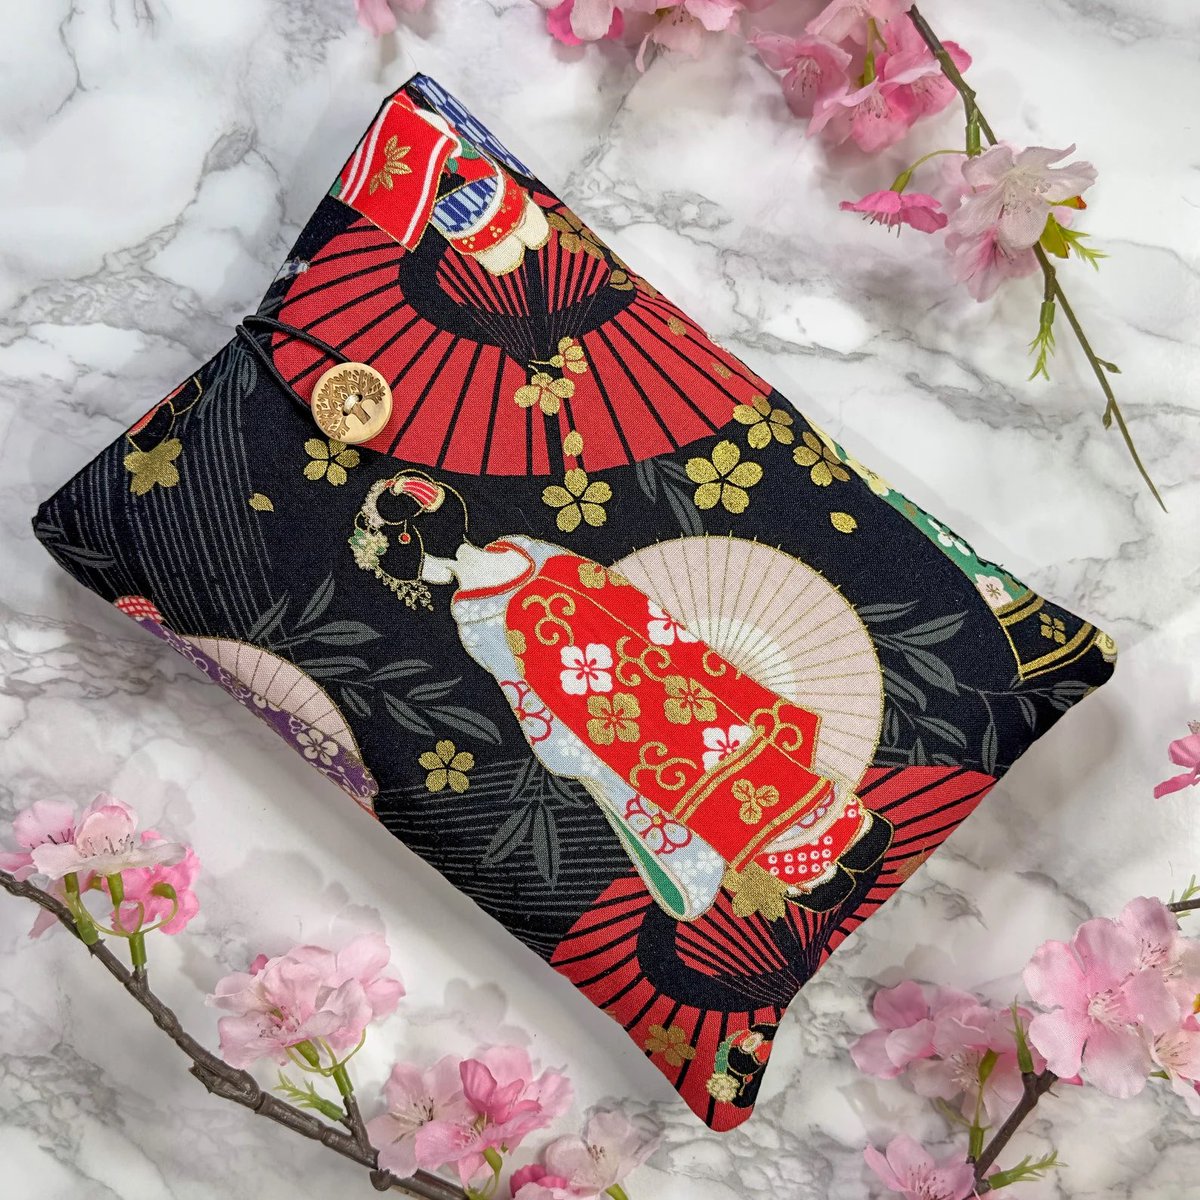 Japanese Cotton Book Sleeve japangiftsuk.etsy.com/listing/164270…

#MHHSBD #Handcrafted #JapanGifts #earlybiz #handmadehour #CraftBizParty #giftideas #UKCraftersHour #ShopSmall #UKGiftHour #UKGiftAM #inbizhour #smallbusiness #CelebsForSmallBiz #UKMakers #bizbubble #YourBizHour #etsyfinds